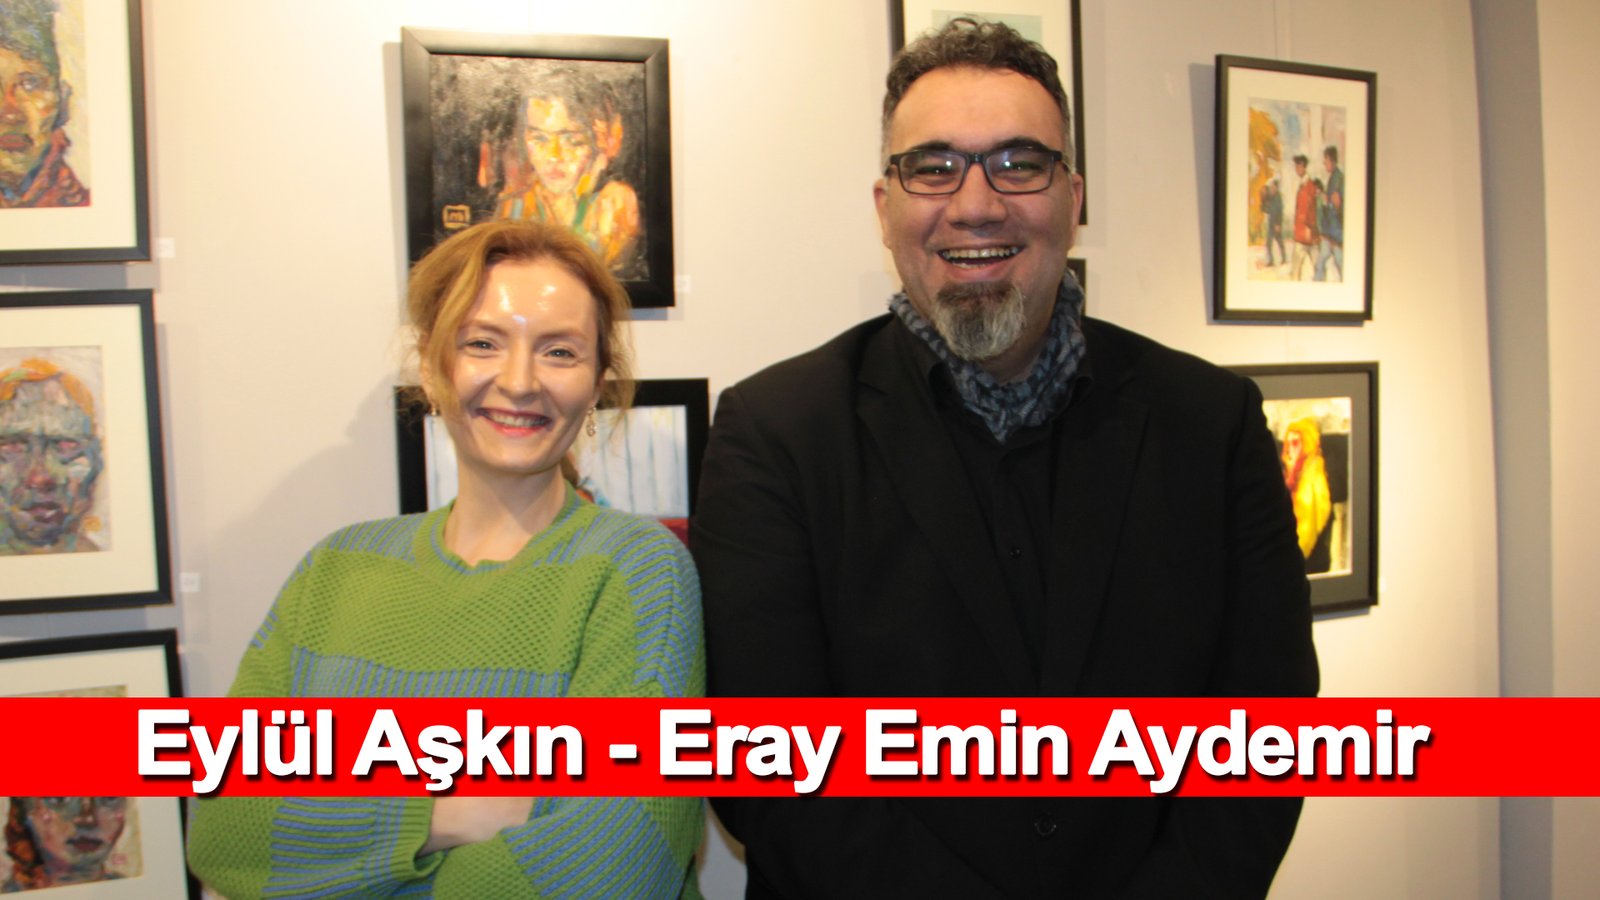 Eray Emin Aydemir “oldukça Sağlam Bir Heavy Metal Dinleyicisiyim” Eylül Aşkın Ile... Özel Söyleşi (1)